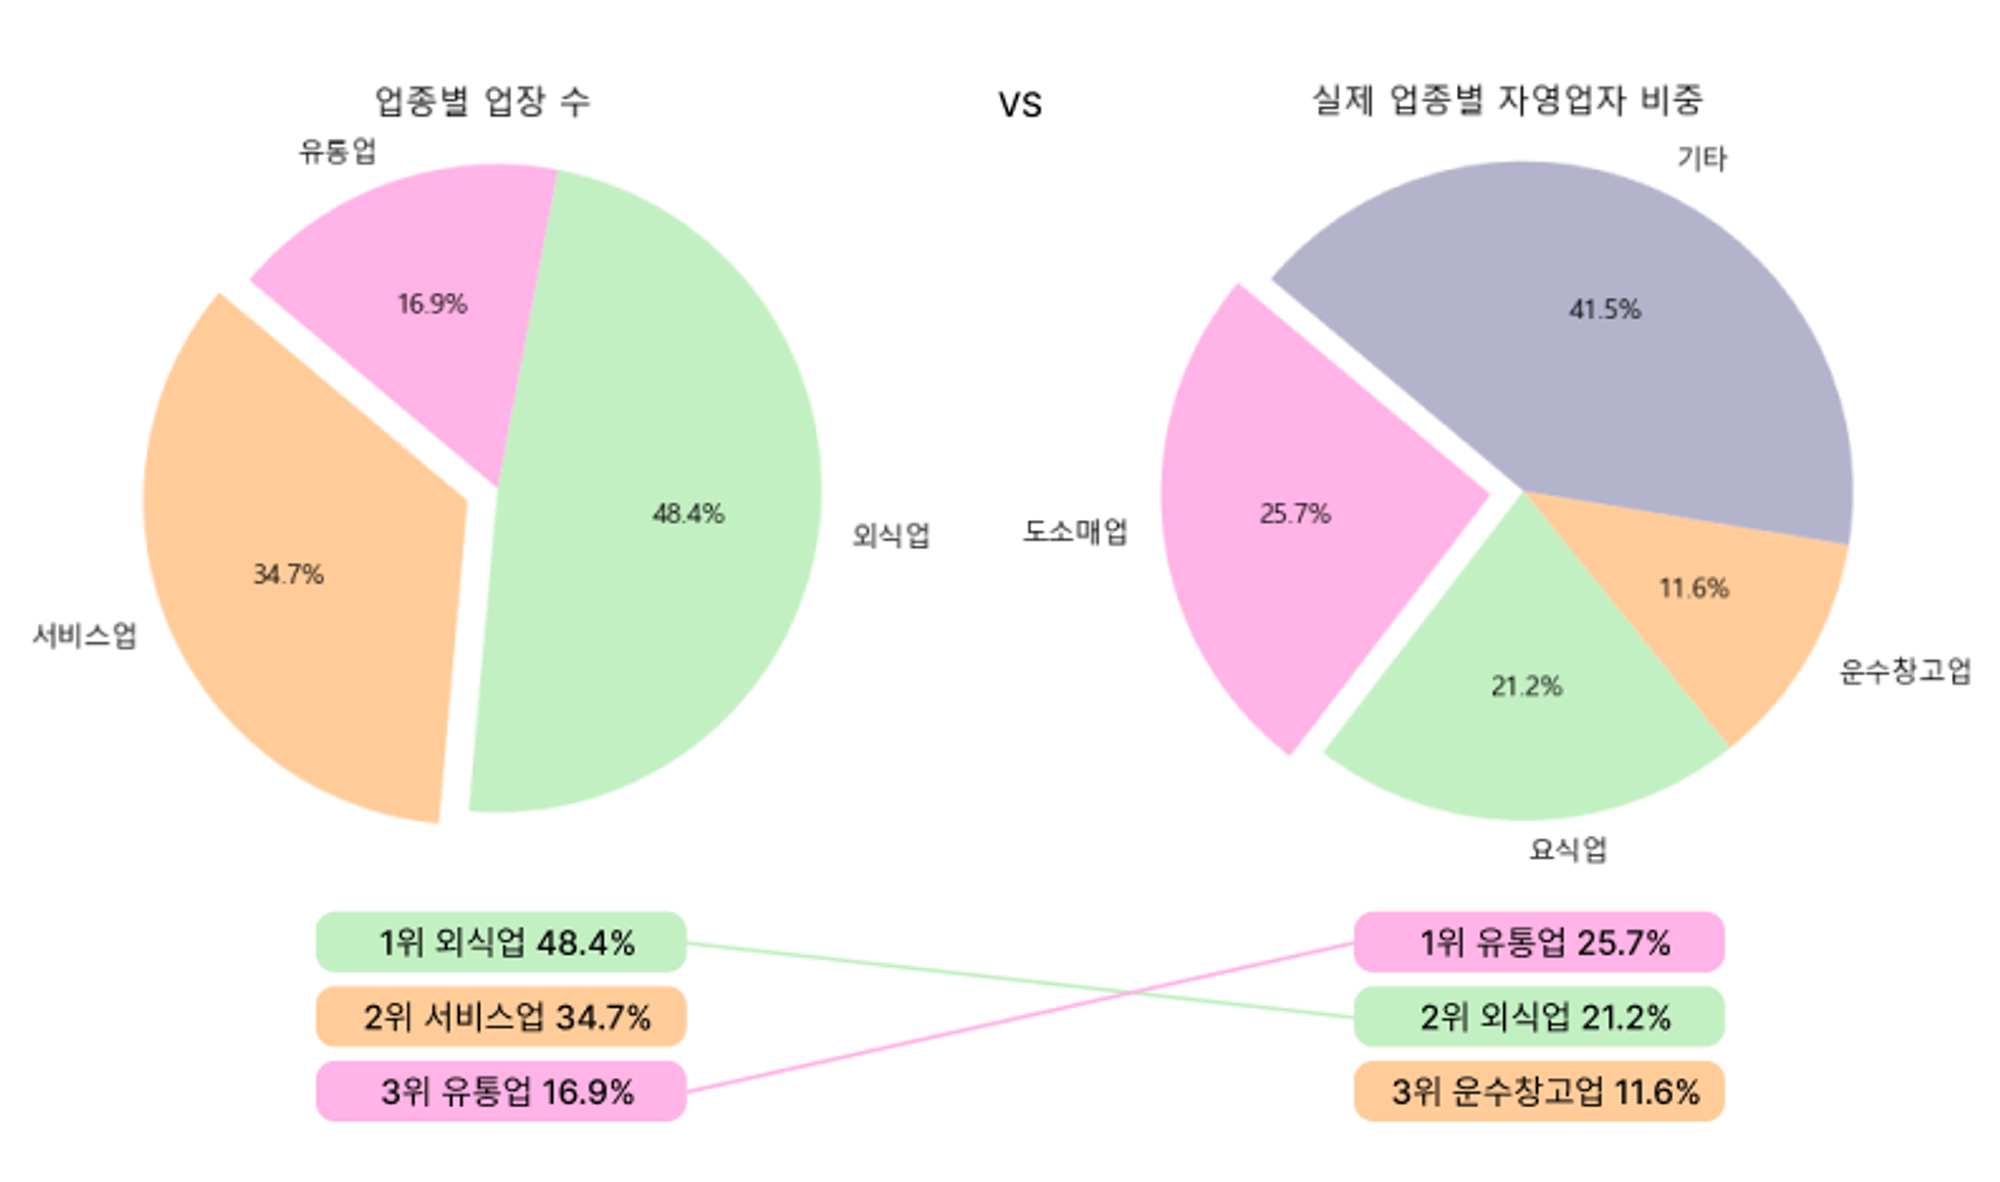        (왼) 한국신용데이터 유통업/외식업 업장 수 (출처: 디사일로) | (오) 실제 업종별 업장 수 (출처: 일요서울)